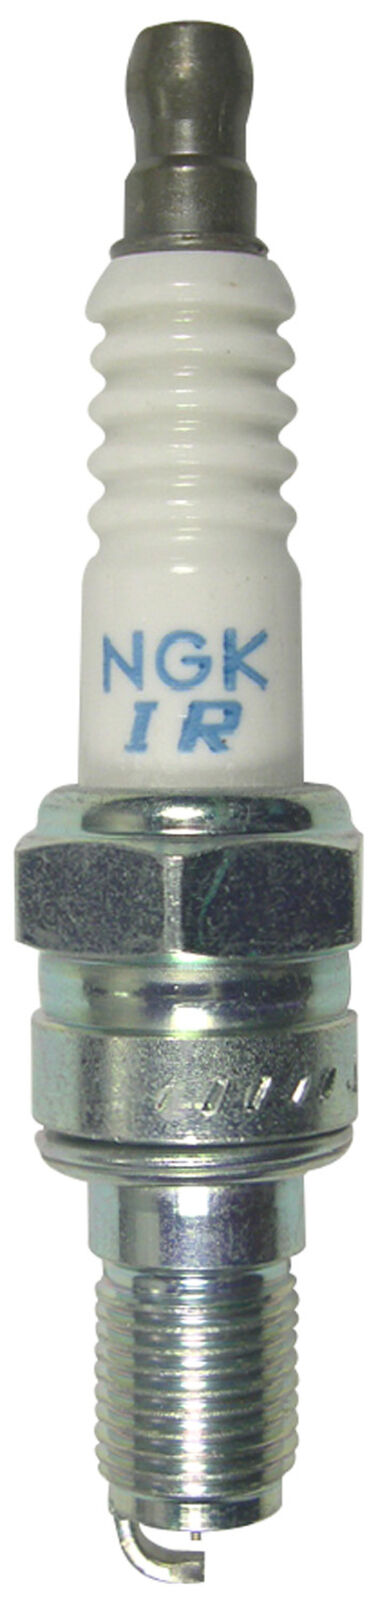 NGK Laser Iridium Spark Plug box 4 IMR9B-9H VFR800 Interceptor FOR 02 Honda